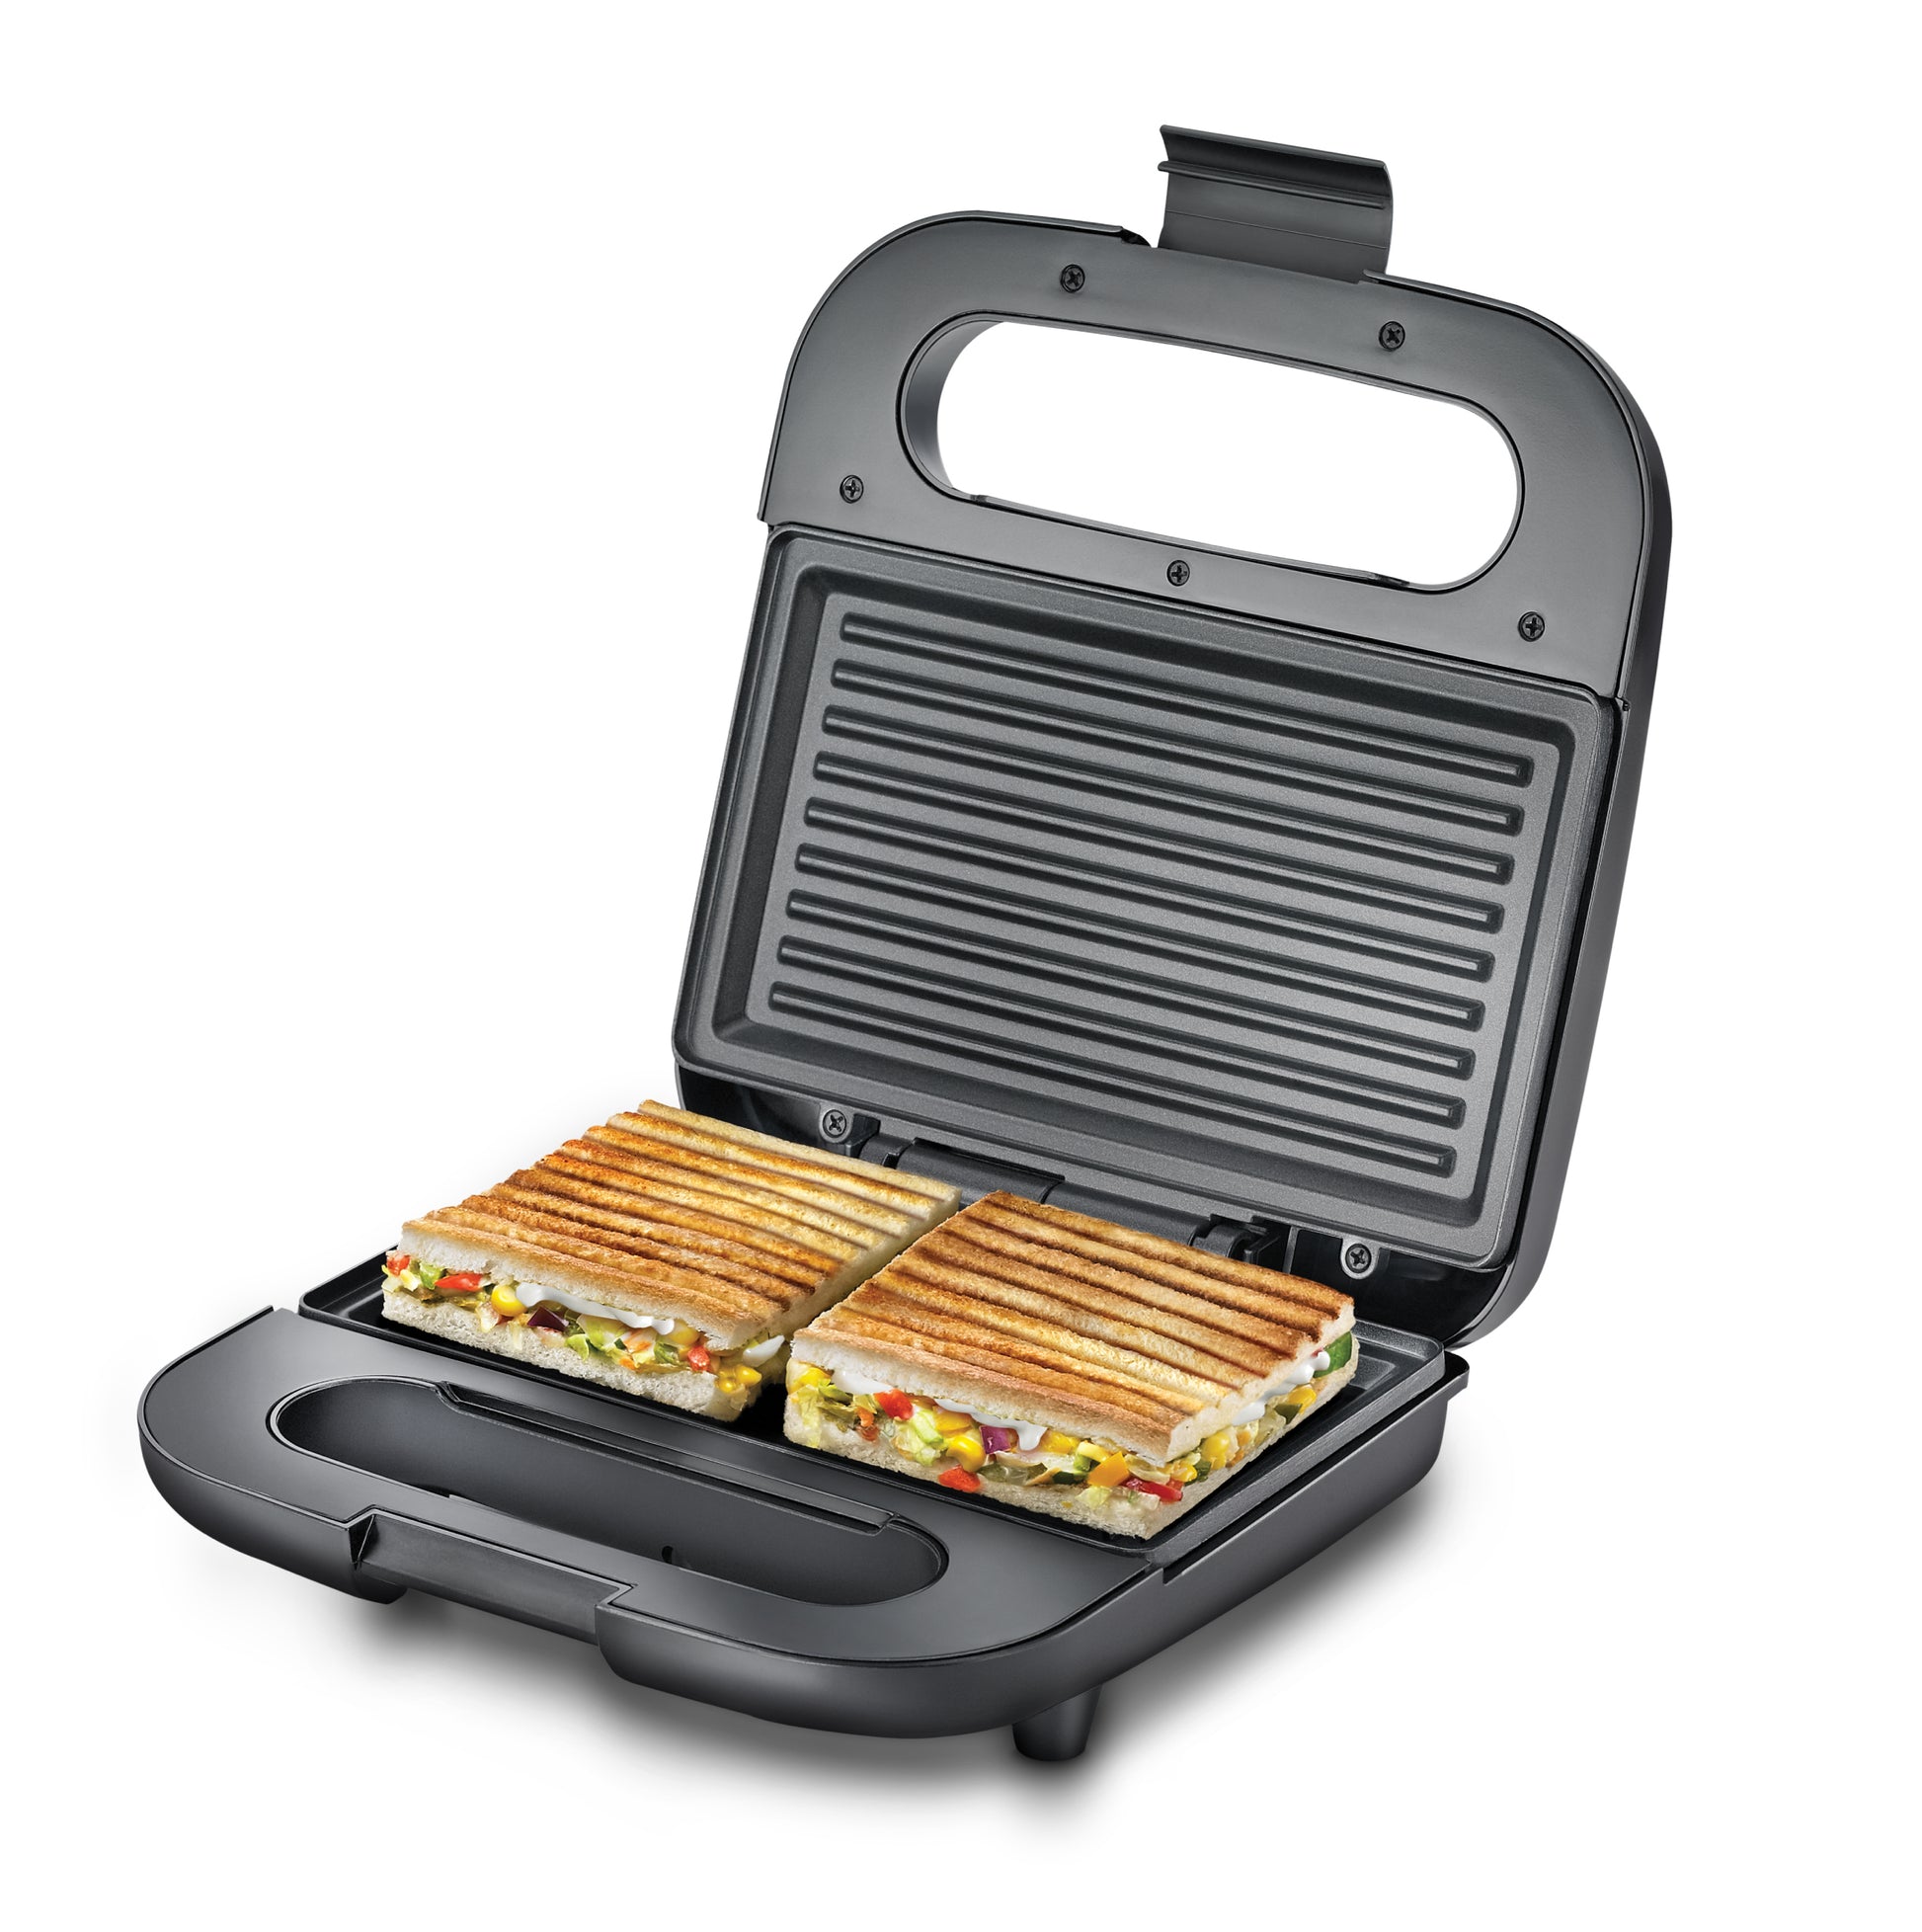 प्रेस्टीज पीजीडीपी 01 सैंडविच ग्रिलर नॉन-स्टिक डीप हीटिंग प्लेट्स के साथ - 750 वॉट | बड़े आकार की ब्रेड और सैंडविच के लिए 